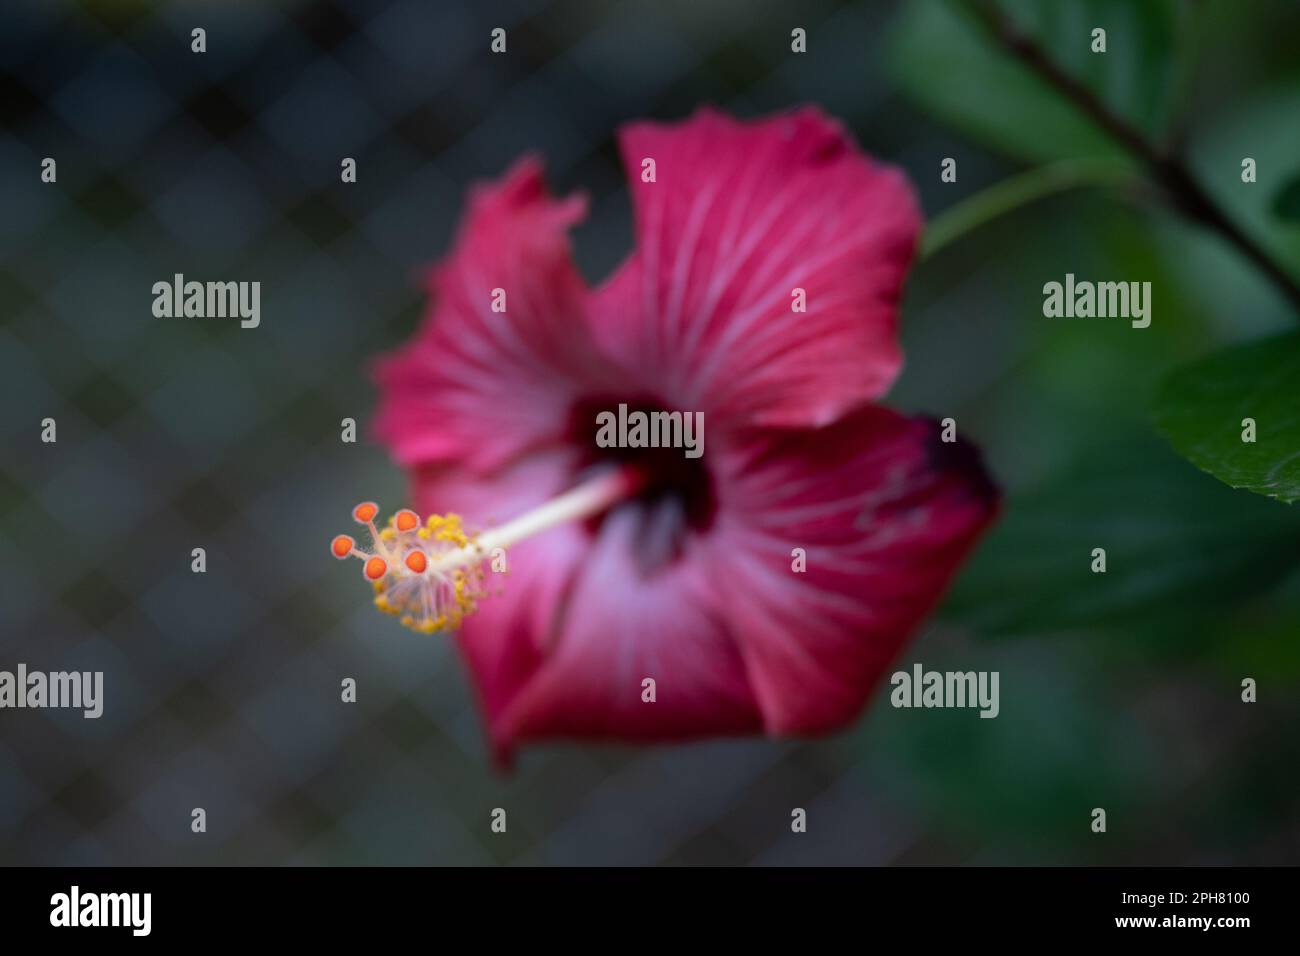 Fiore di Hibiscus, rosso, visto dal lato anteriore, che mette in risalto lo stamen e i pistils delle strutture riproduttive, rosa-sinensis con copy-space Foto Stock